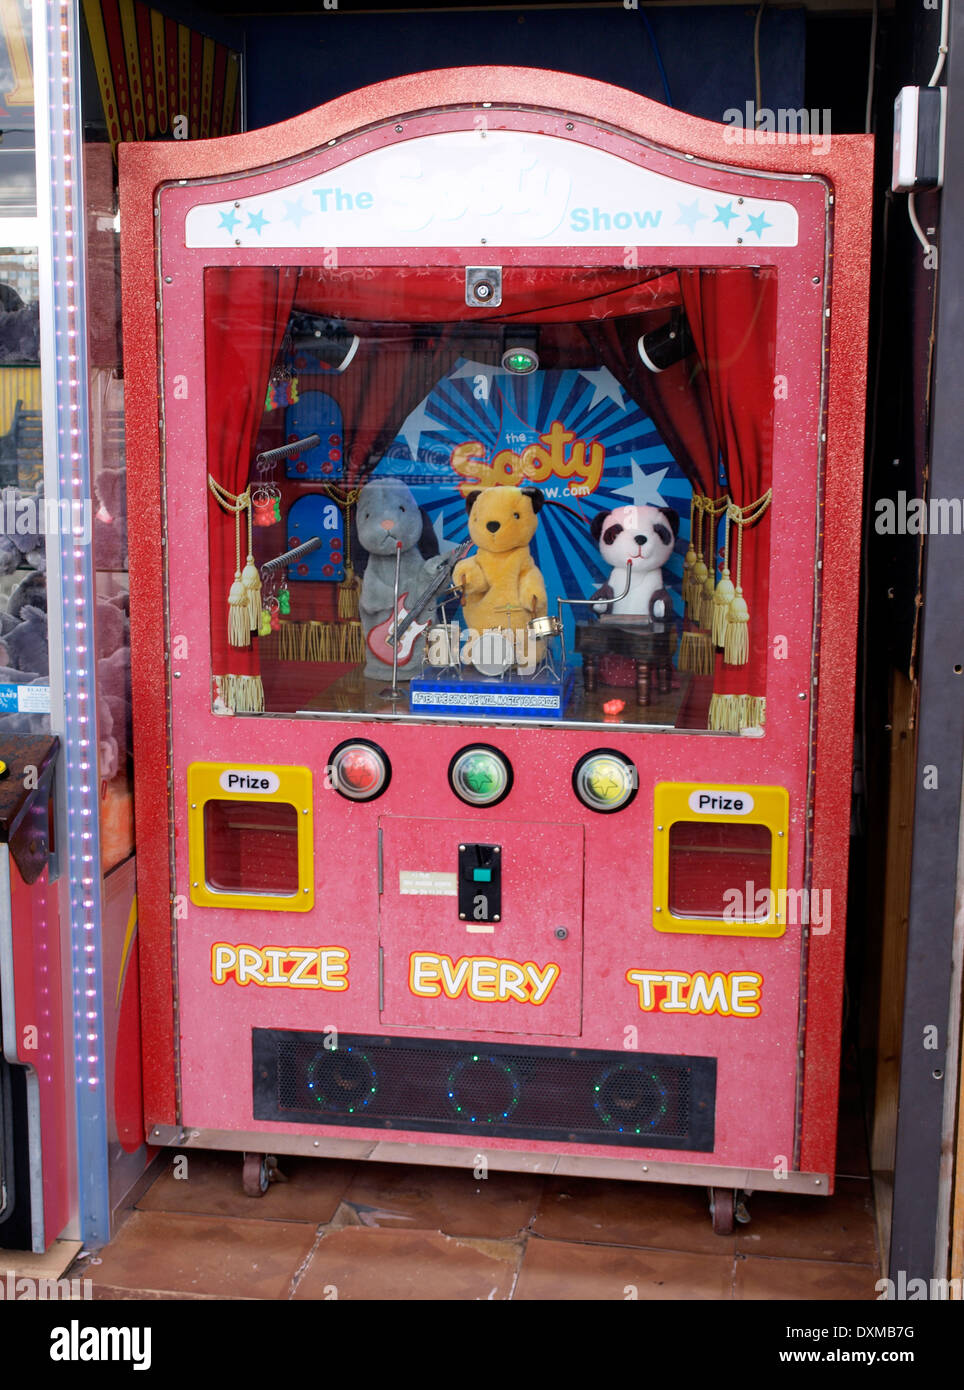 Old Sooty arcade machine, Paignton Pier, Devon, UK Stock Photo